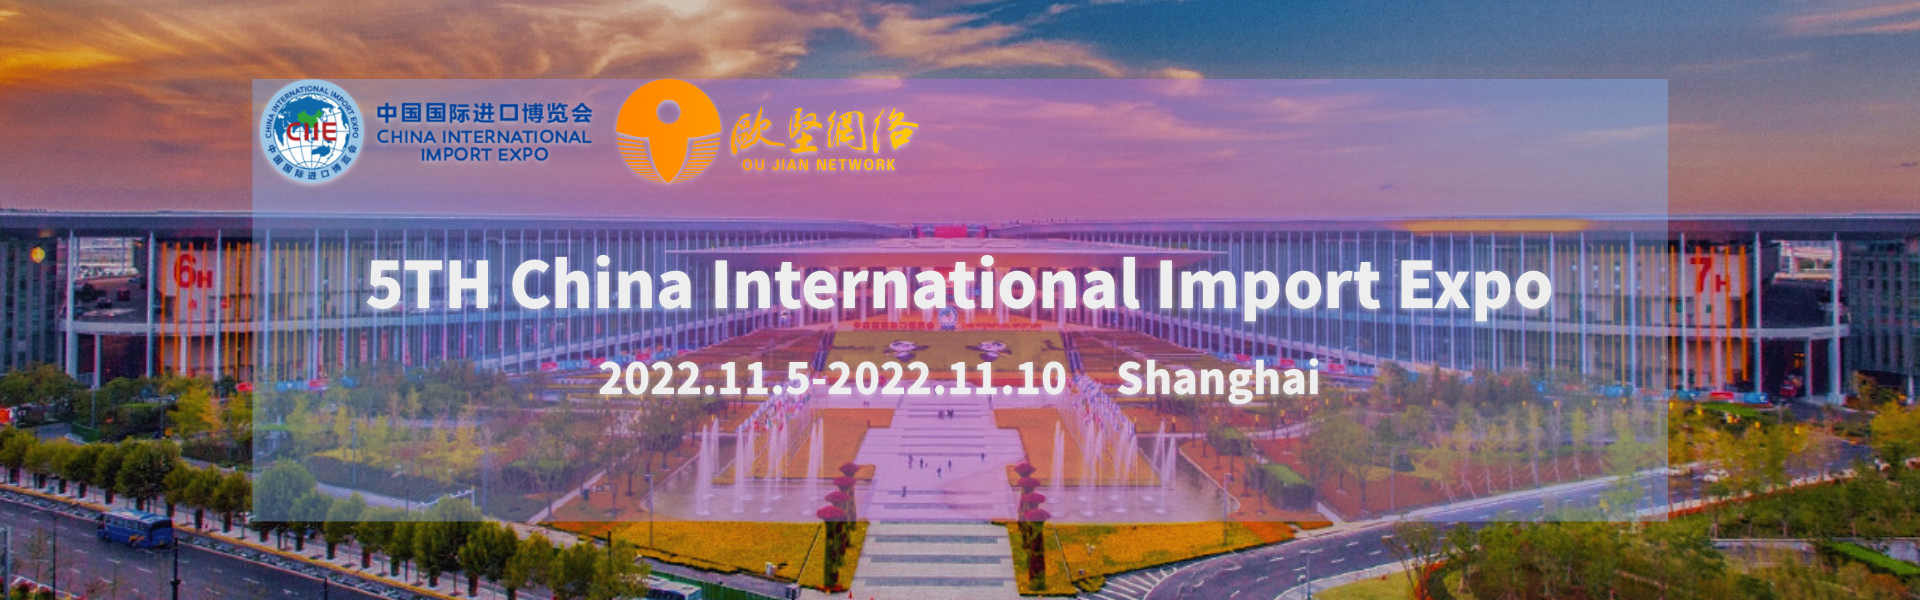 Exposición Internacional de Importaciones de China